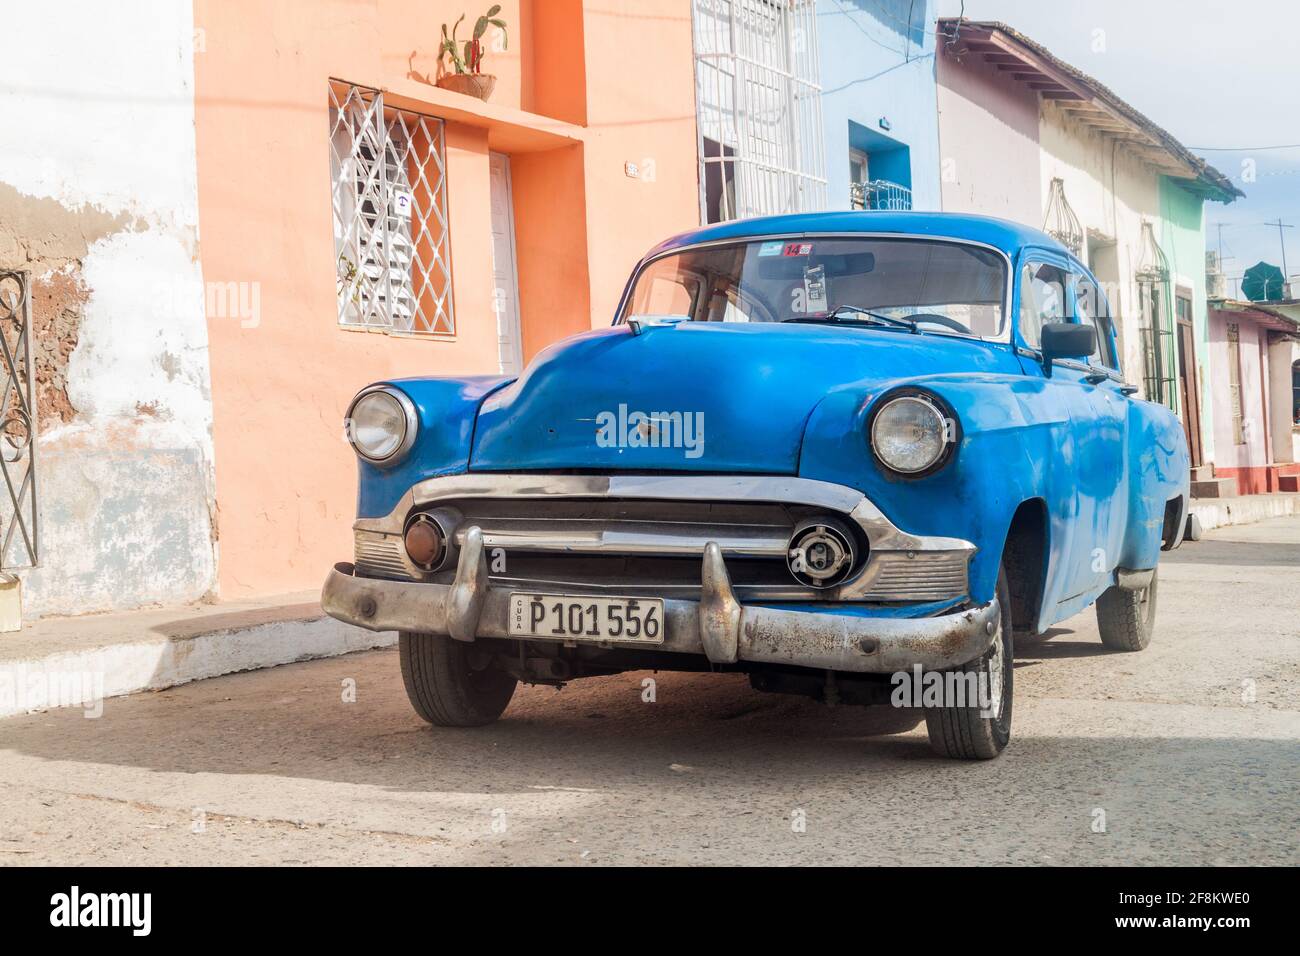 TRINIDAD, CUBA - 8 FÉVRIER 2016 : voiture d'époque dans une rue du centre de Trinidad, Cuba. Banque D'Images